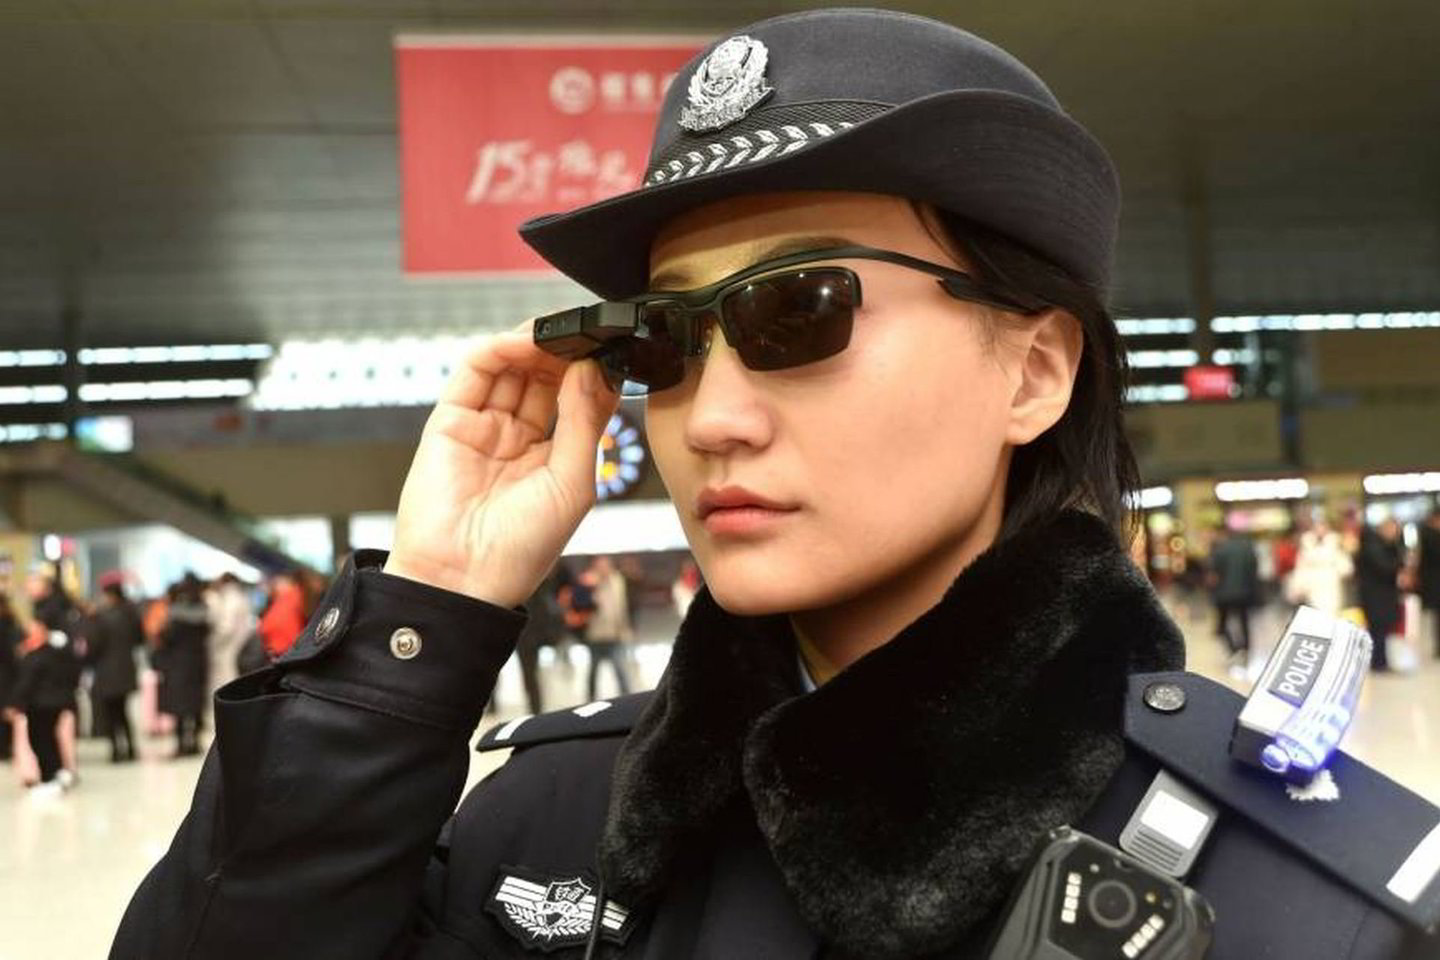  Žmones minioje atpažįstanti dirbtinio intelekto įranga Kinijoje paplitusi — ir dabar papildo policijos pareigūnų matymą.<br> japantimes.co.uk nuotr.